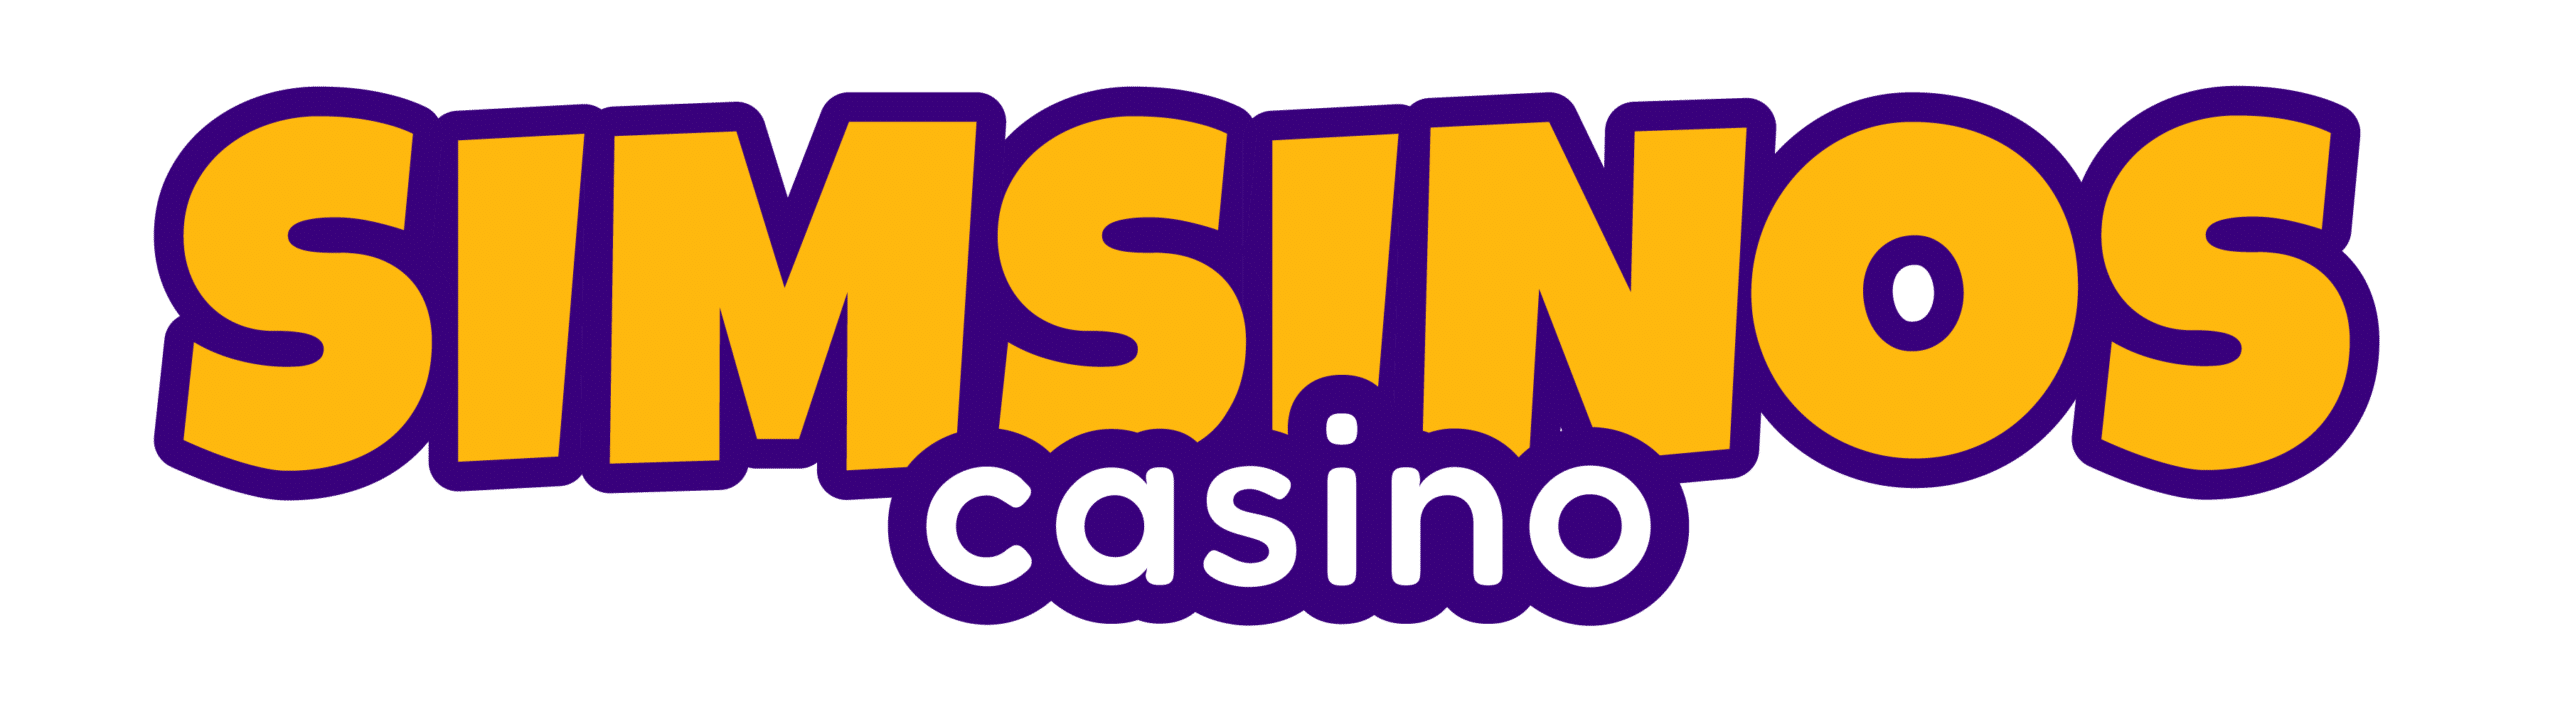 simsinos-casino-erfahungen